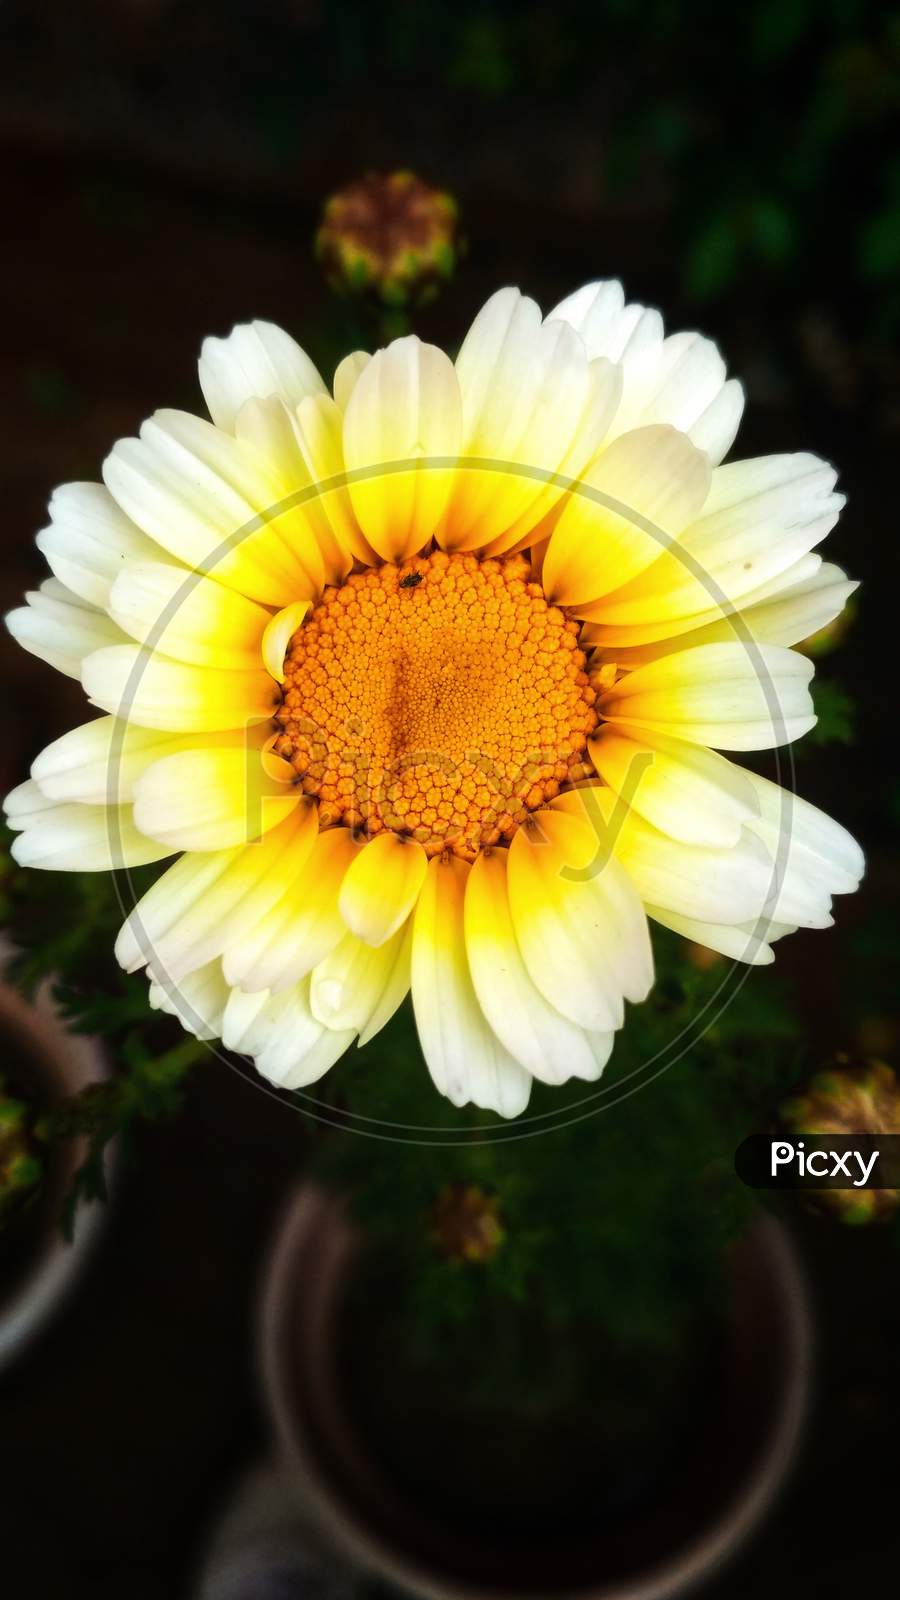 Sunflower,Daisy family.